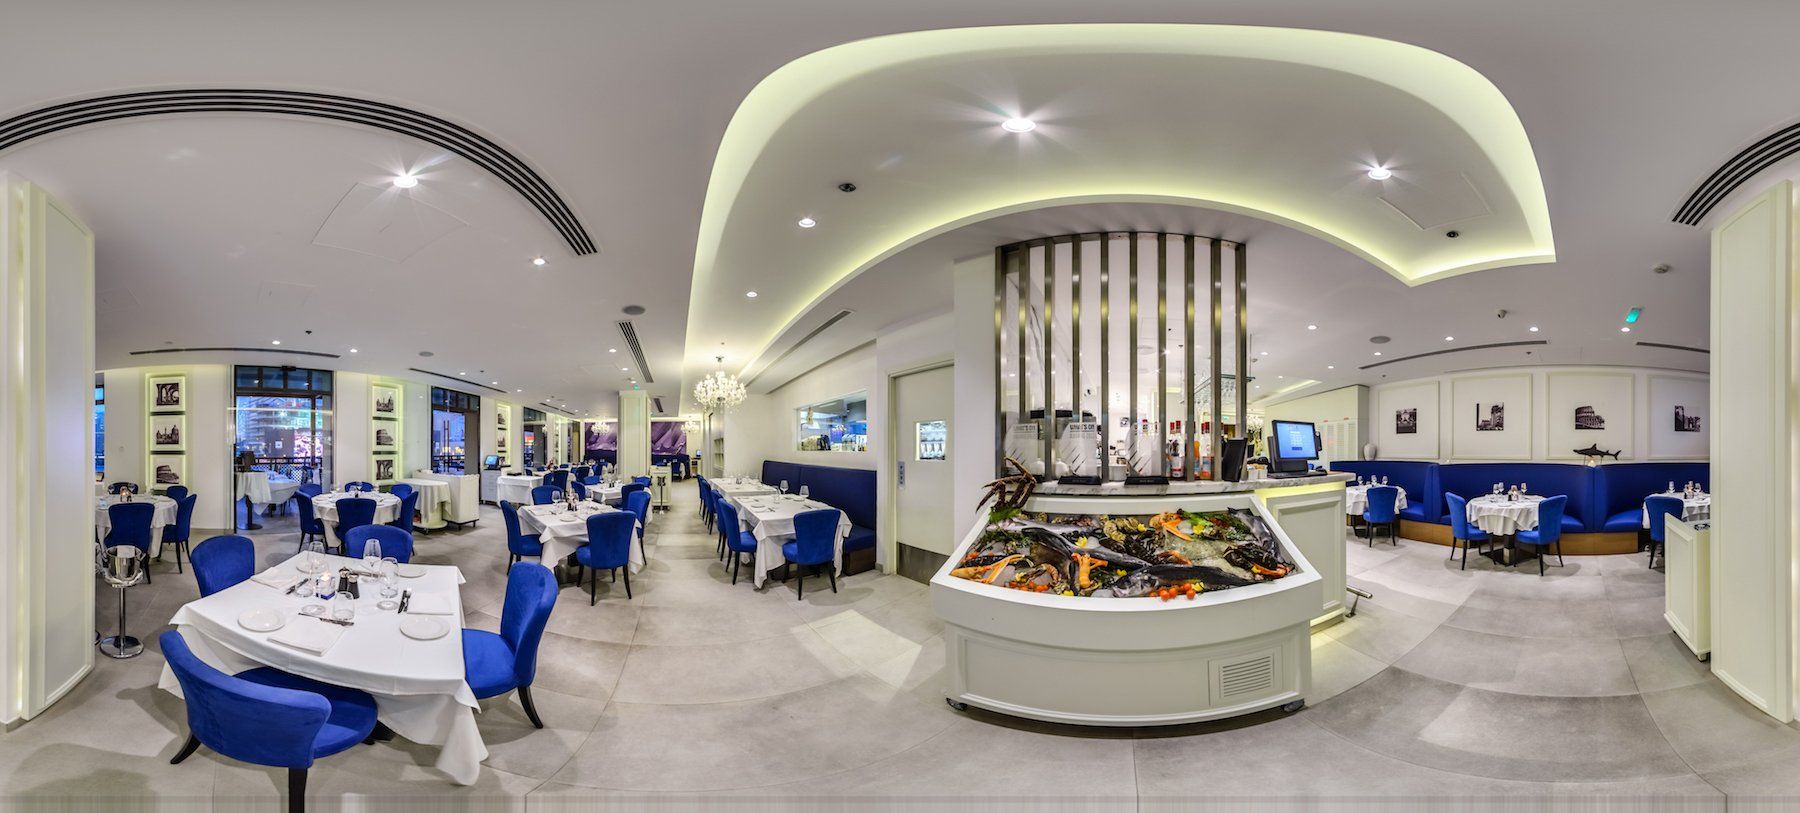 Italian Restaurants Dubai